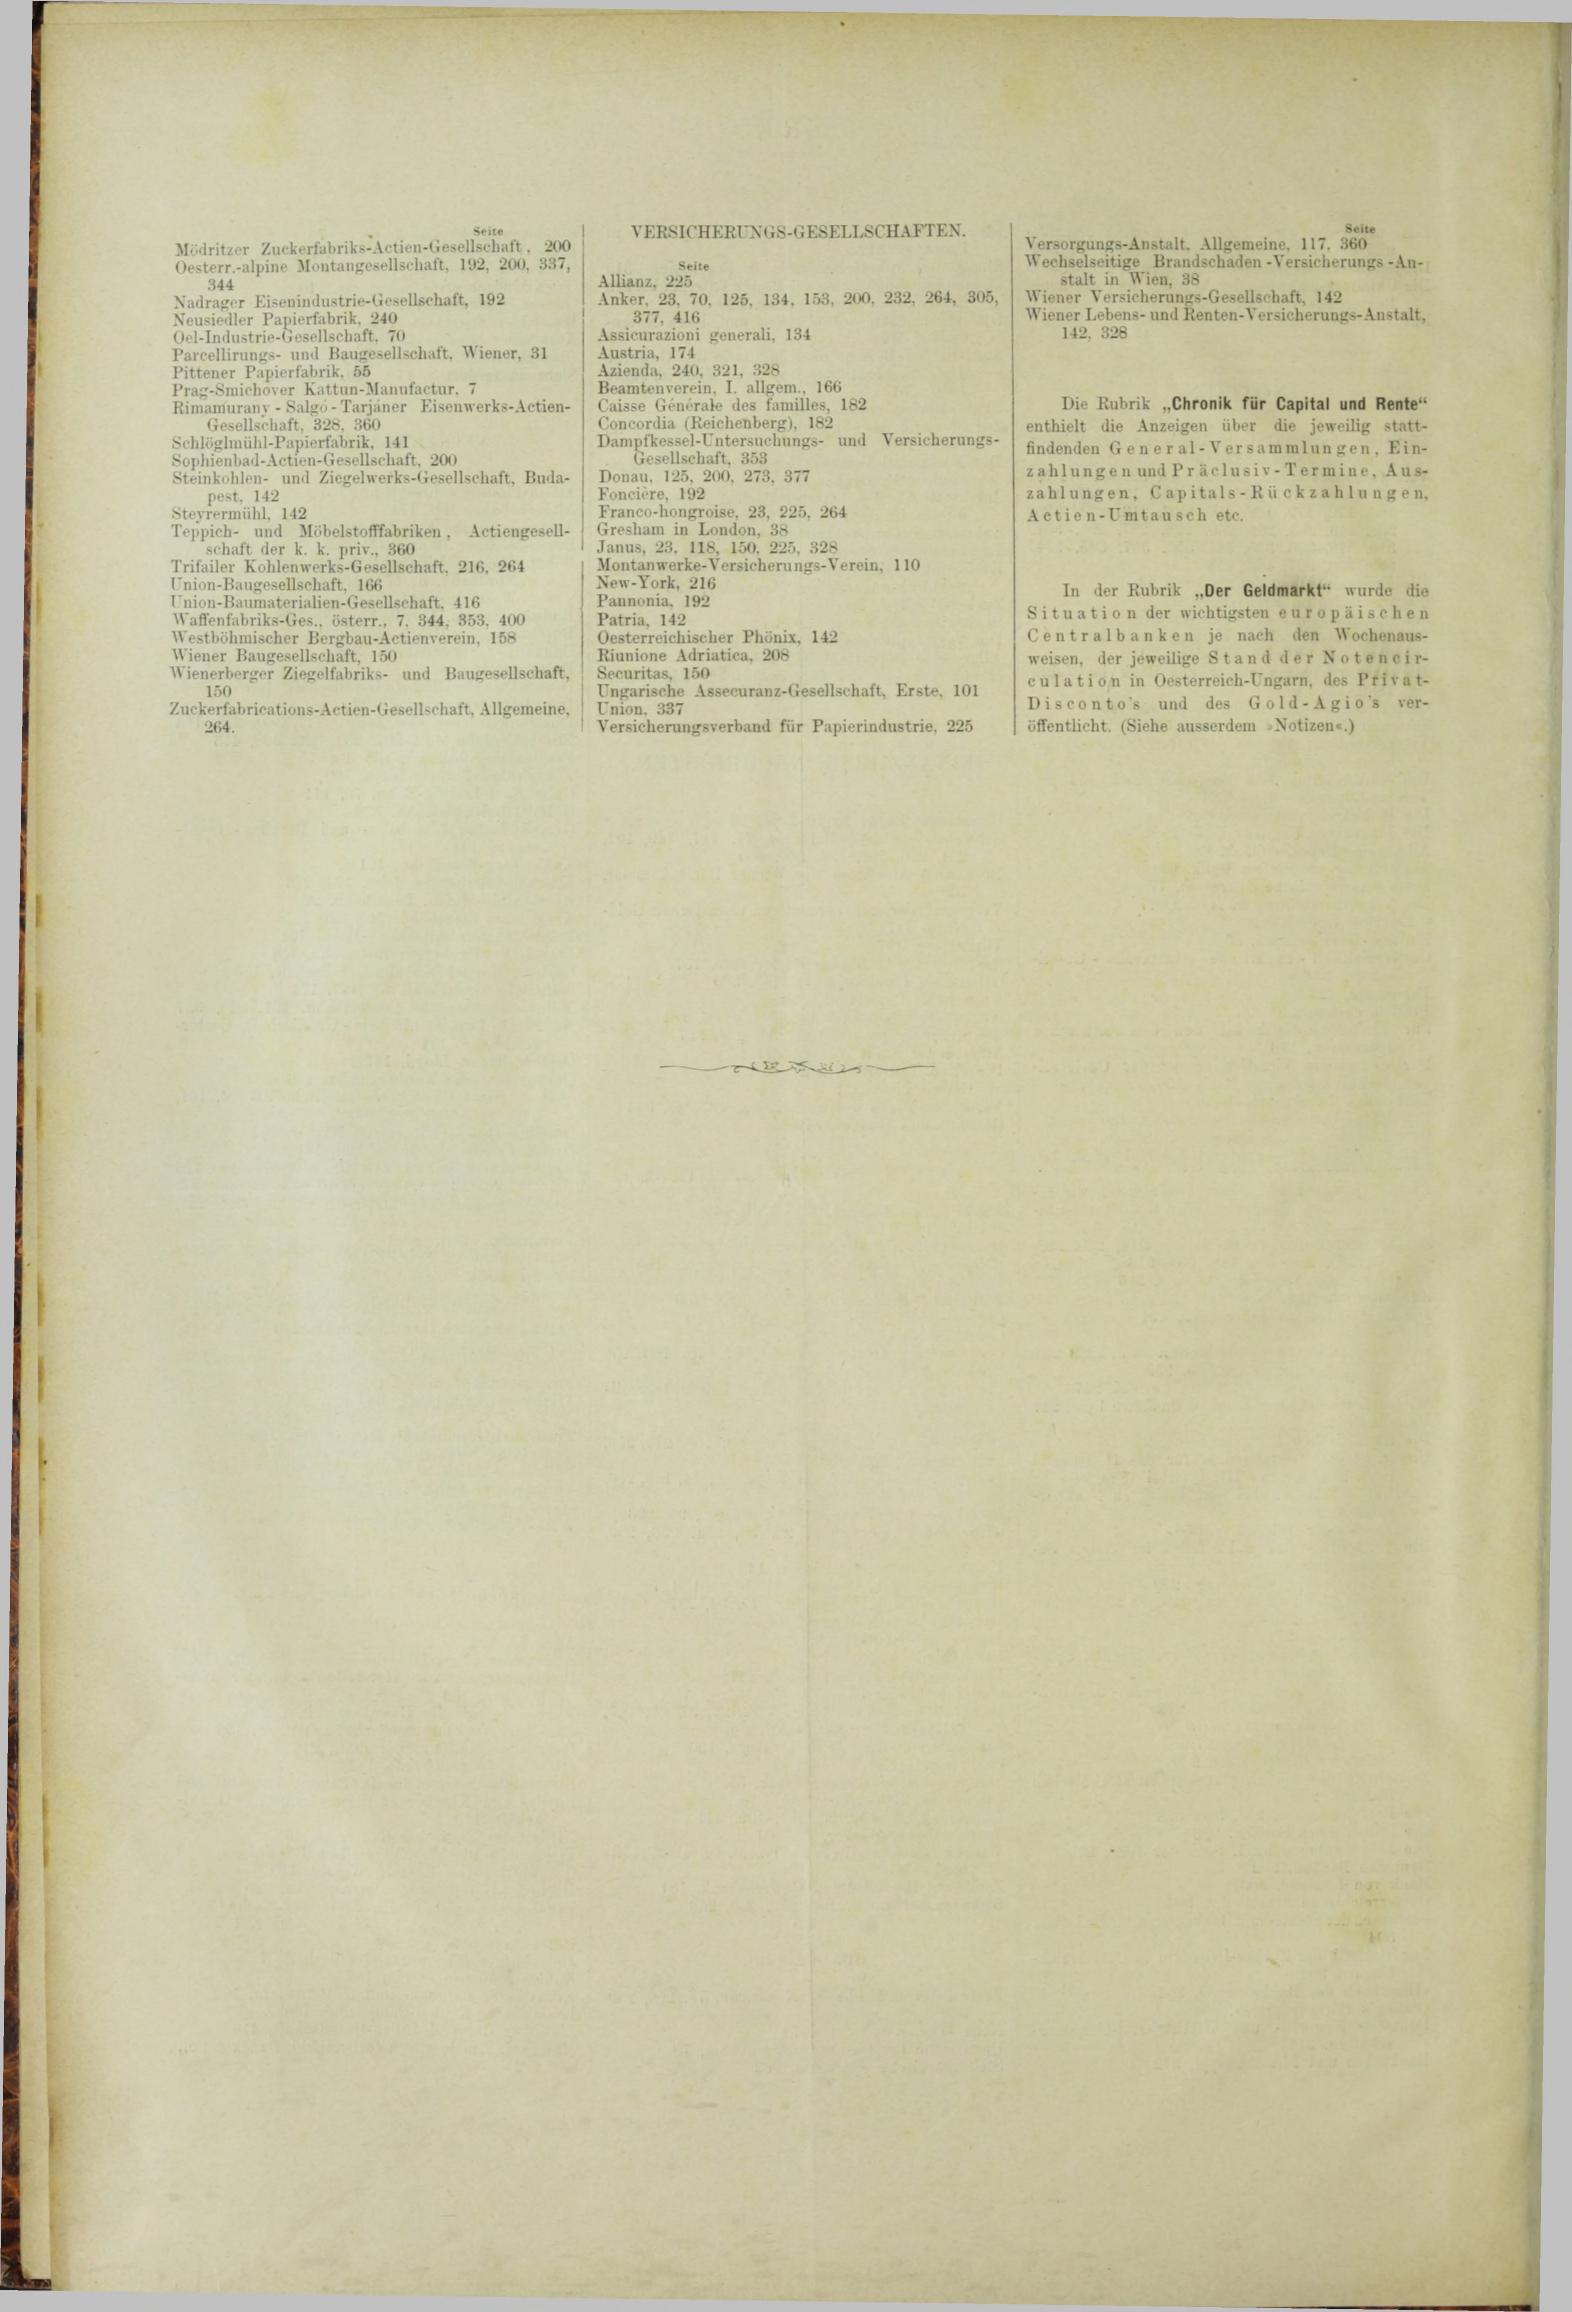 Der Tresor 14.06.1883 - Seite 12